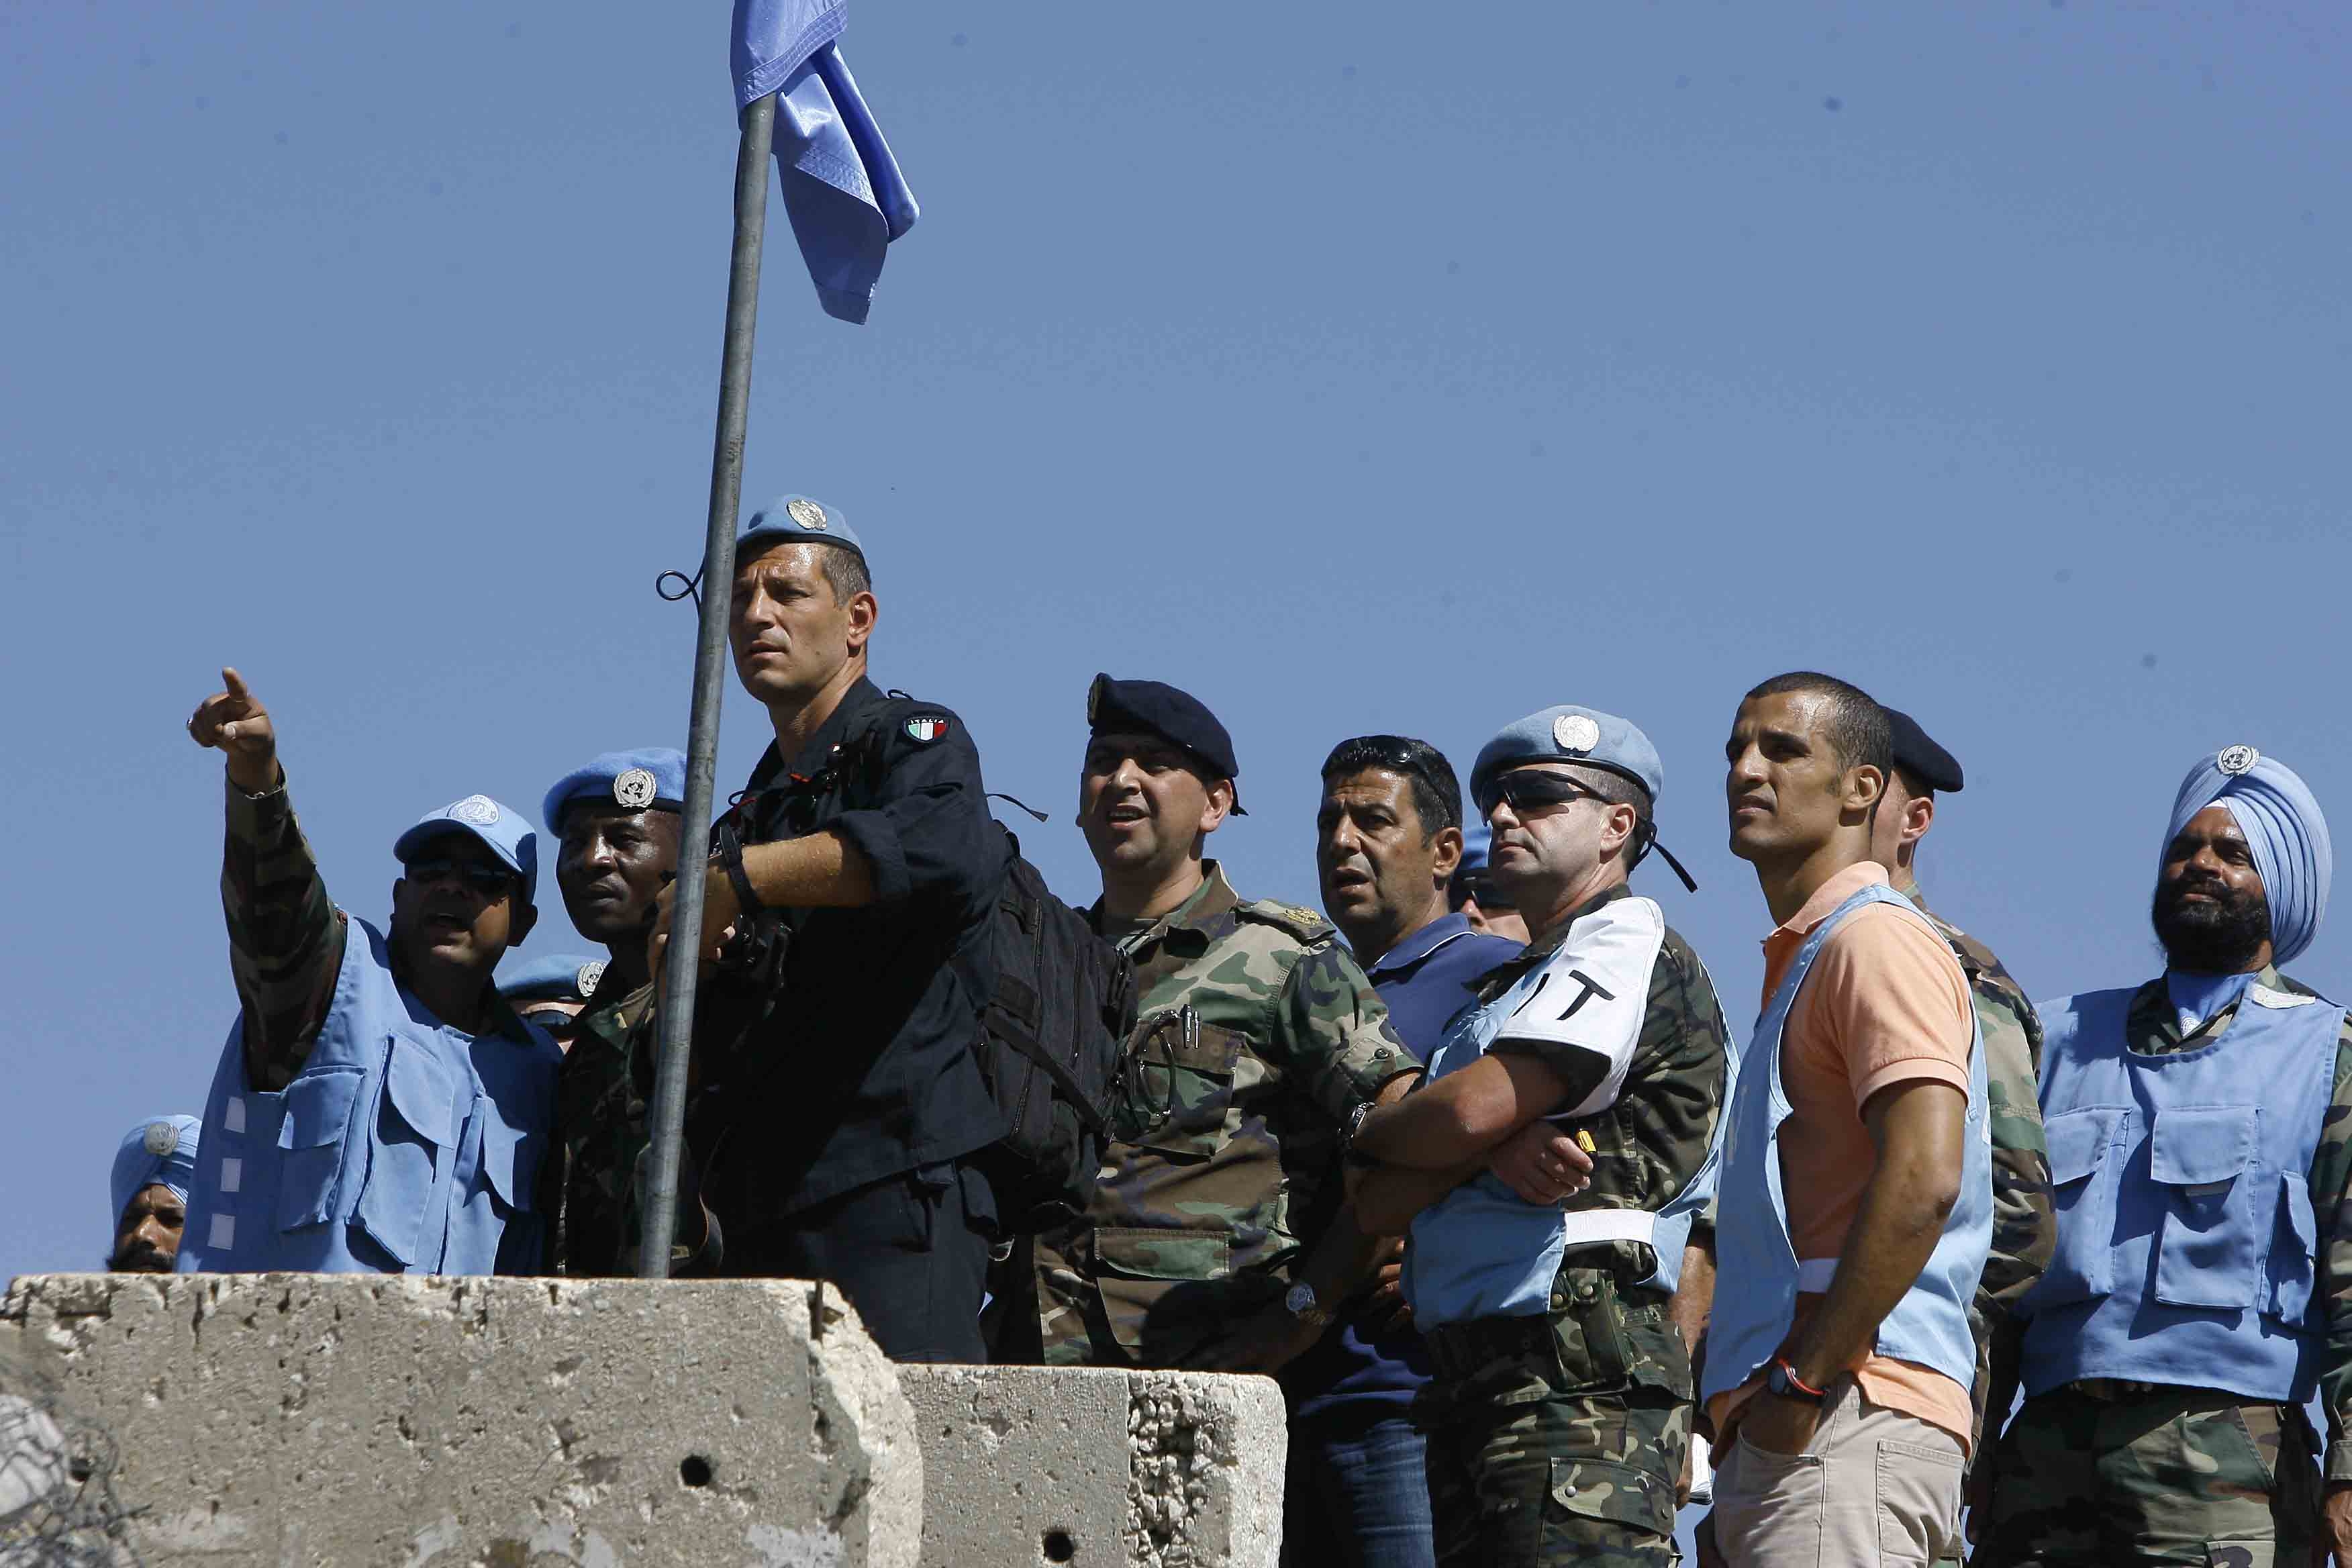  ضباط لبنانيون ودوليون يراقبون تحركات معادية في المزارع المحتلة